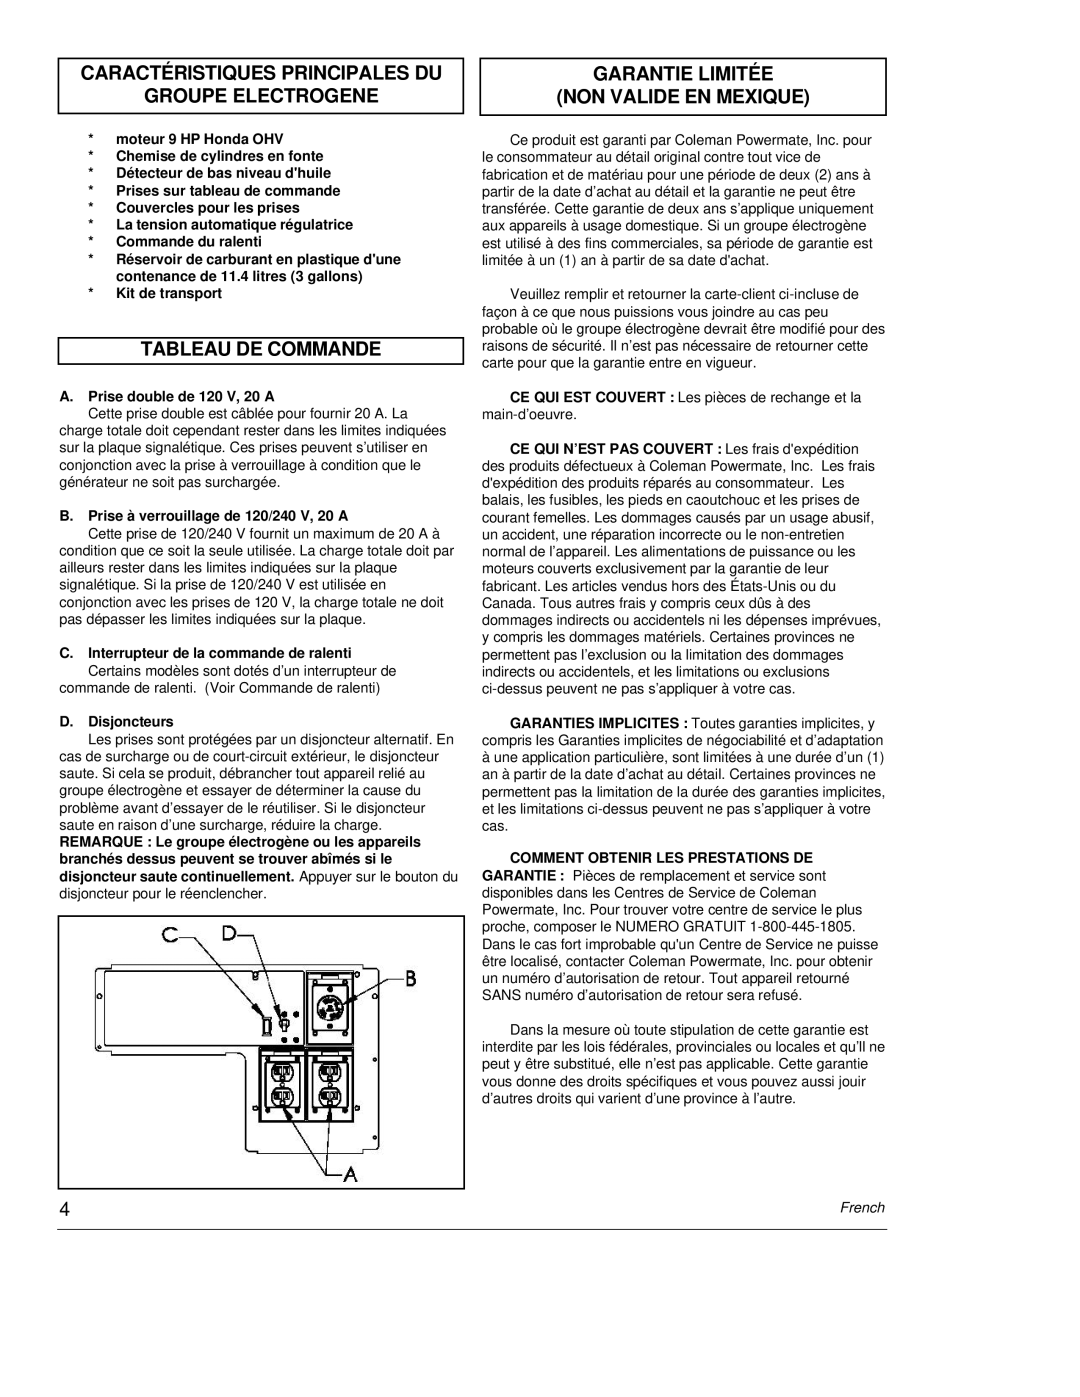 Powermate PC0464500 manual Caractéristiques Principales Du, Groupe Electrogene, Tableau De Commande, French 